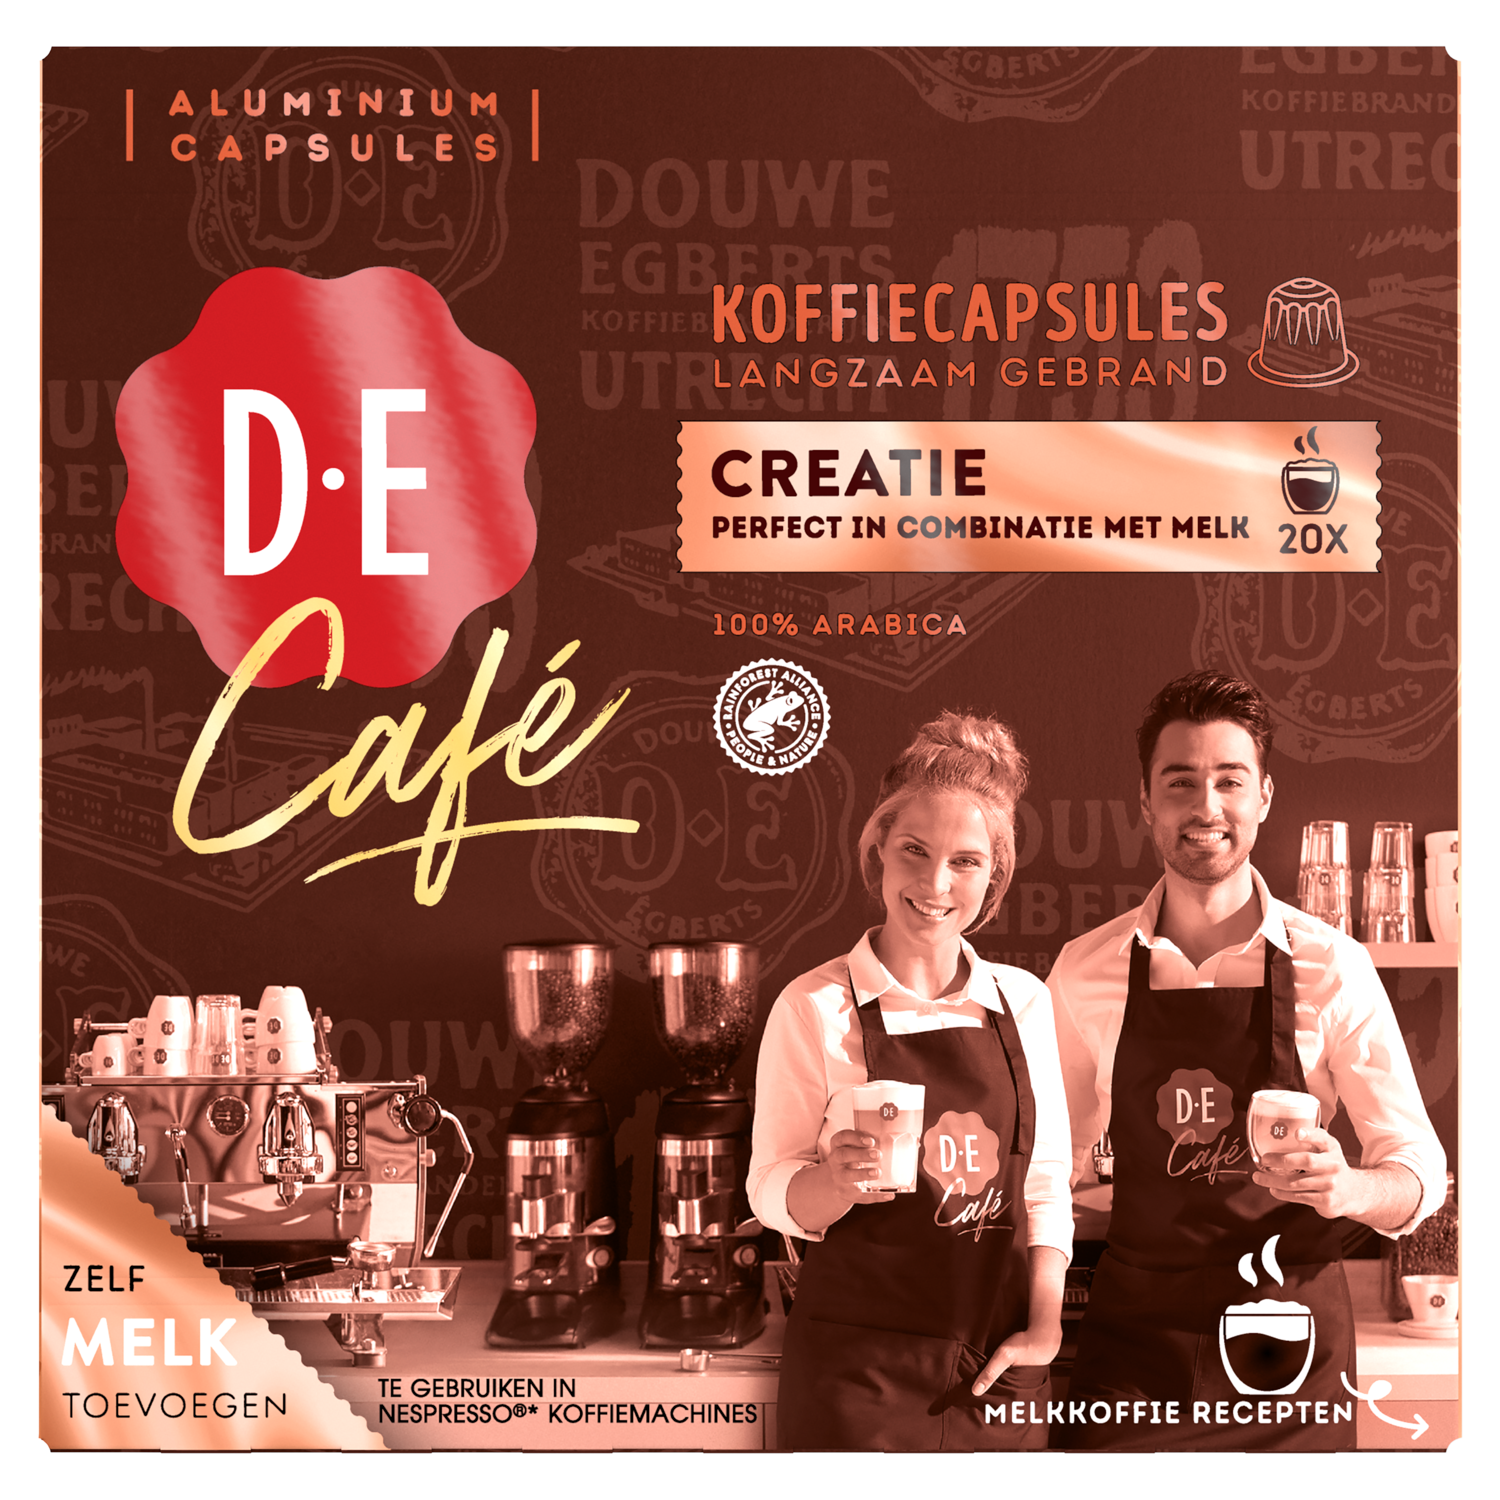 Te voet Socialistisch Bedenk Douwe Egberts Koffiecups de cafe creatie bestellen?